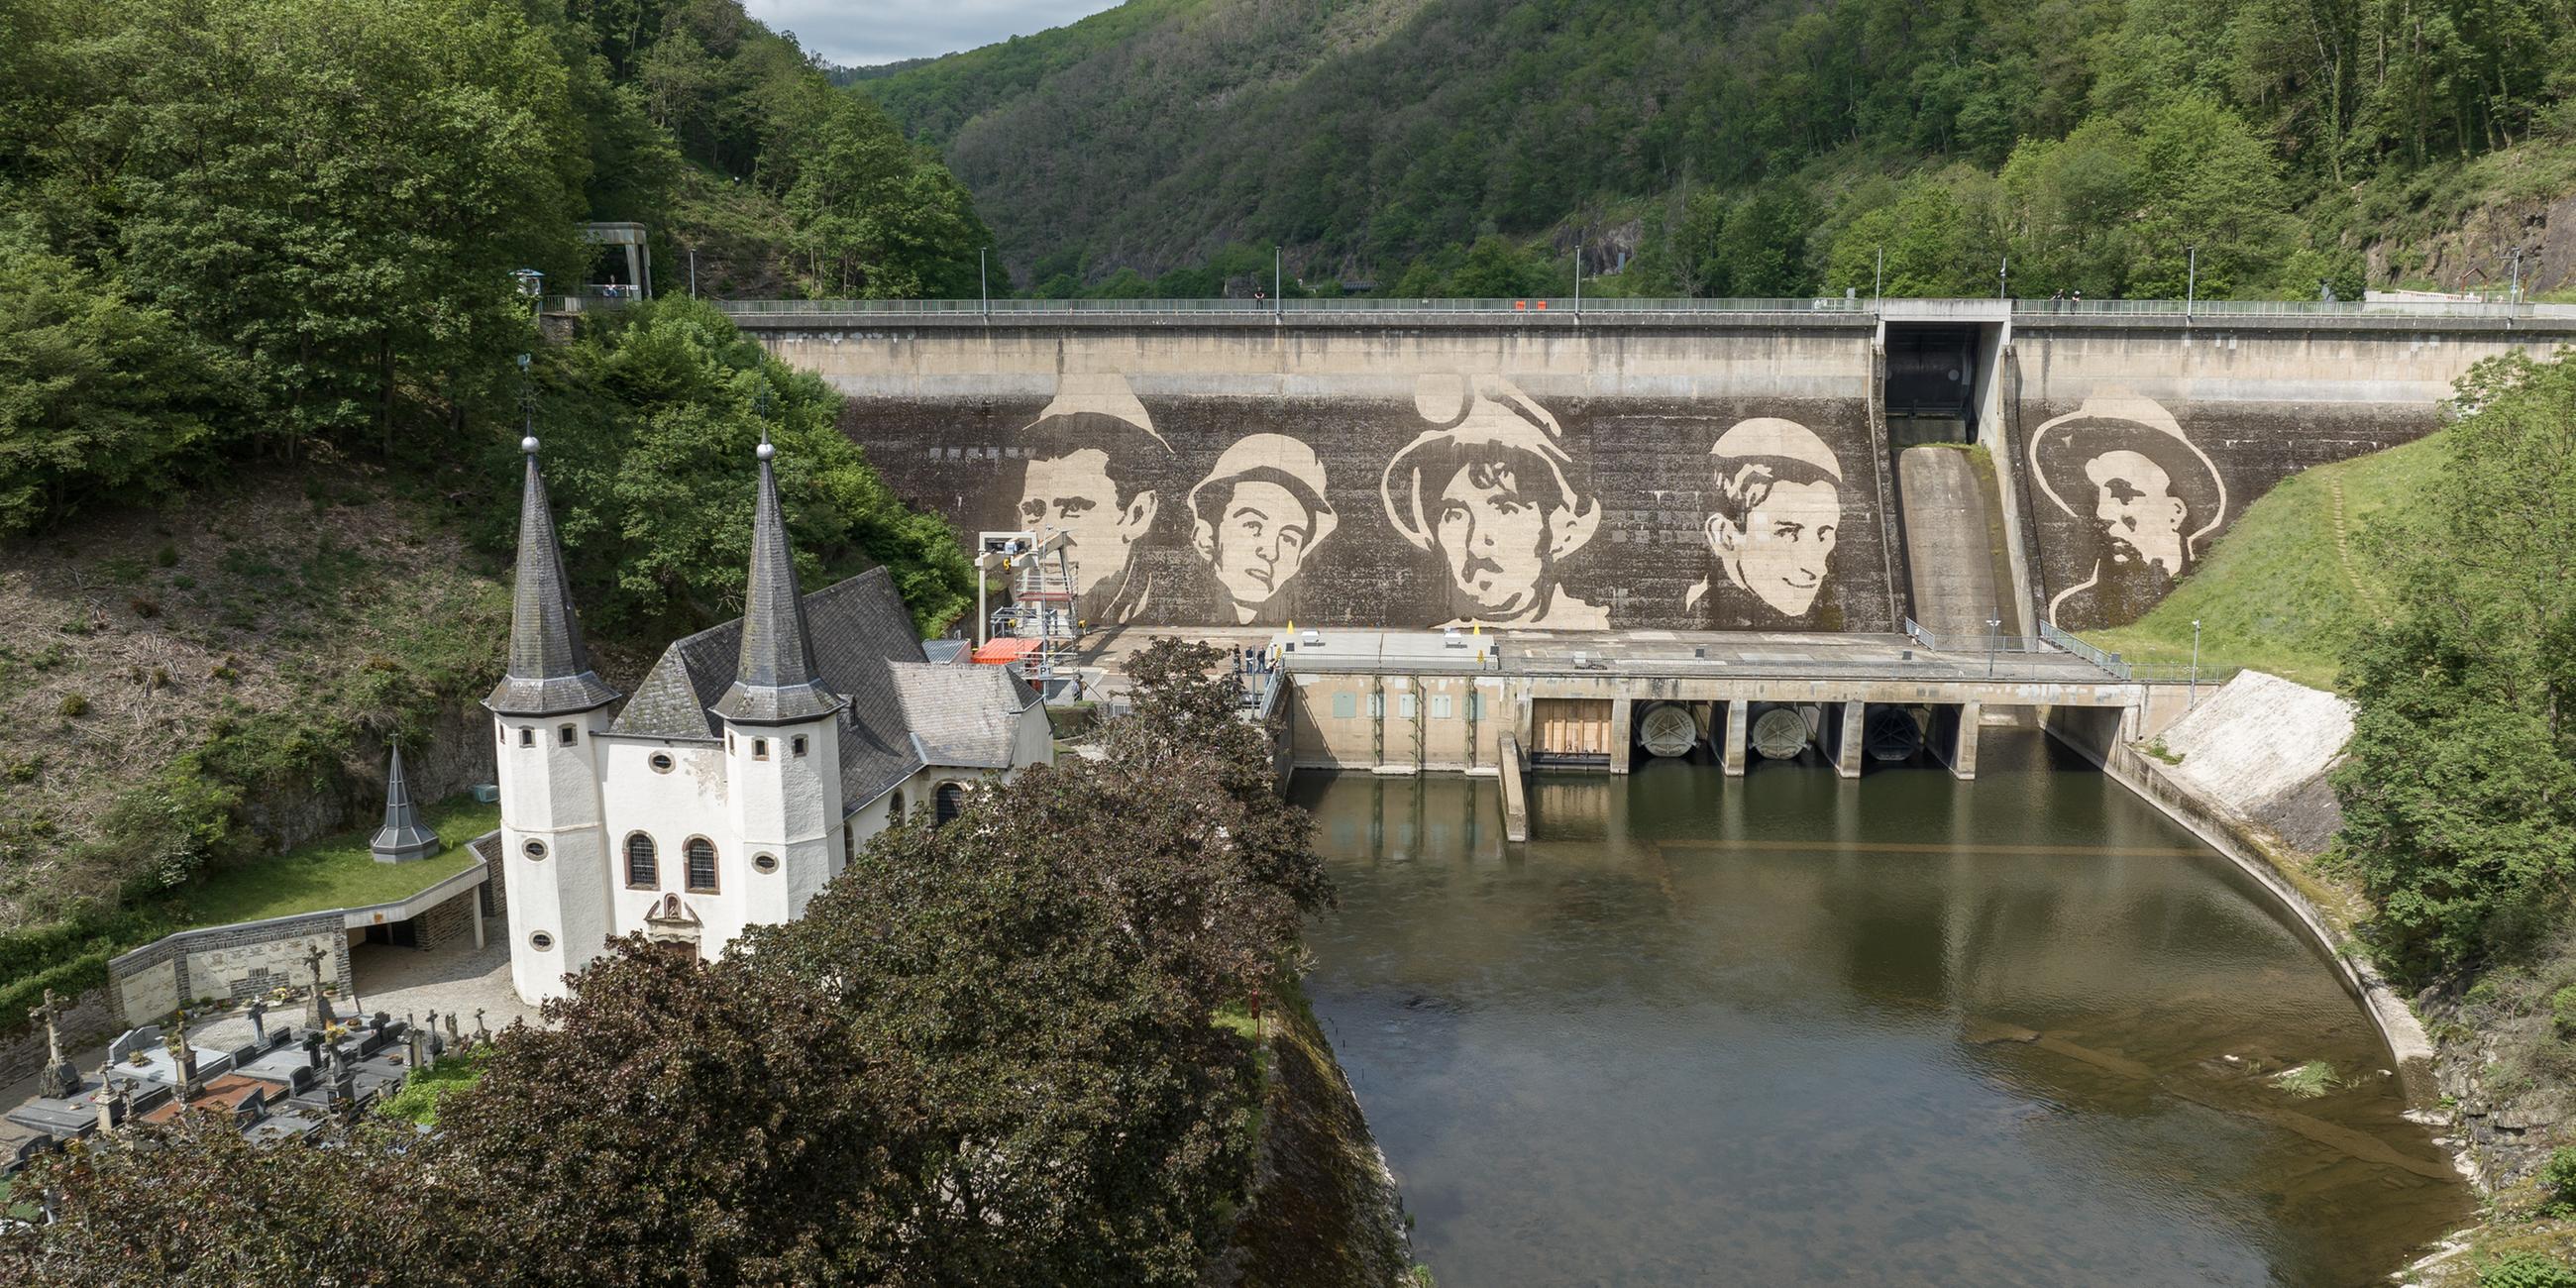 An einer Staumauer im luxemburgischen Vianden prangt das jüngste monumentale Werk des Künstlers Klaus Dauven. Dauven gilt als Pionier des Reverse Graffiti